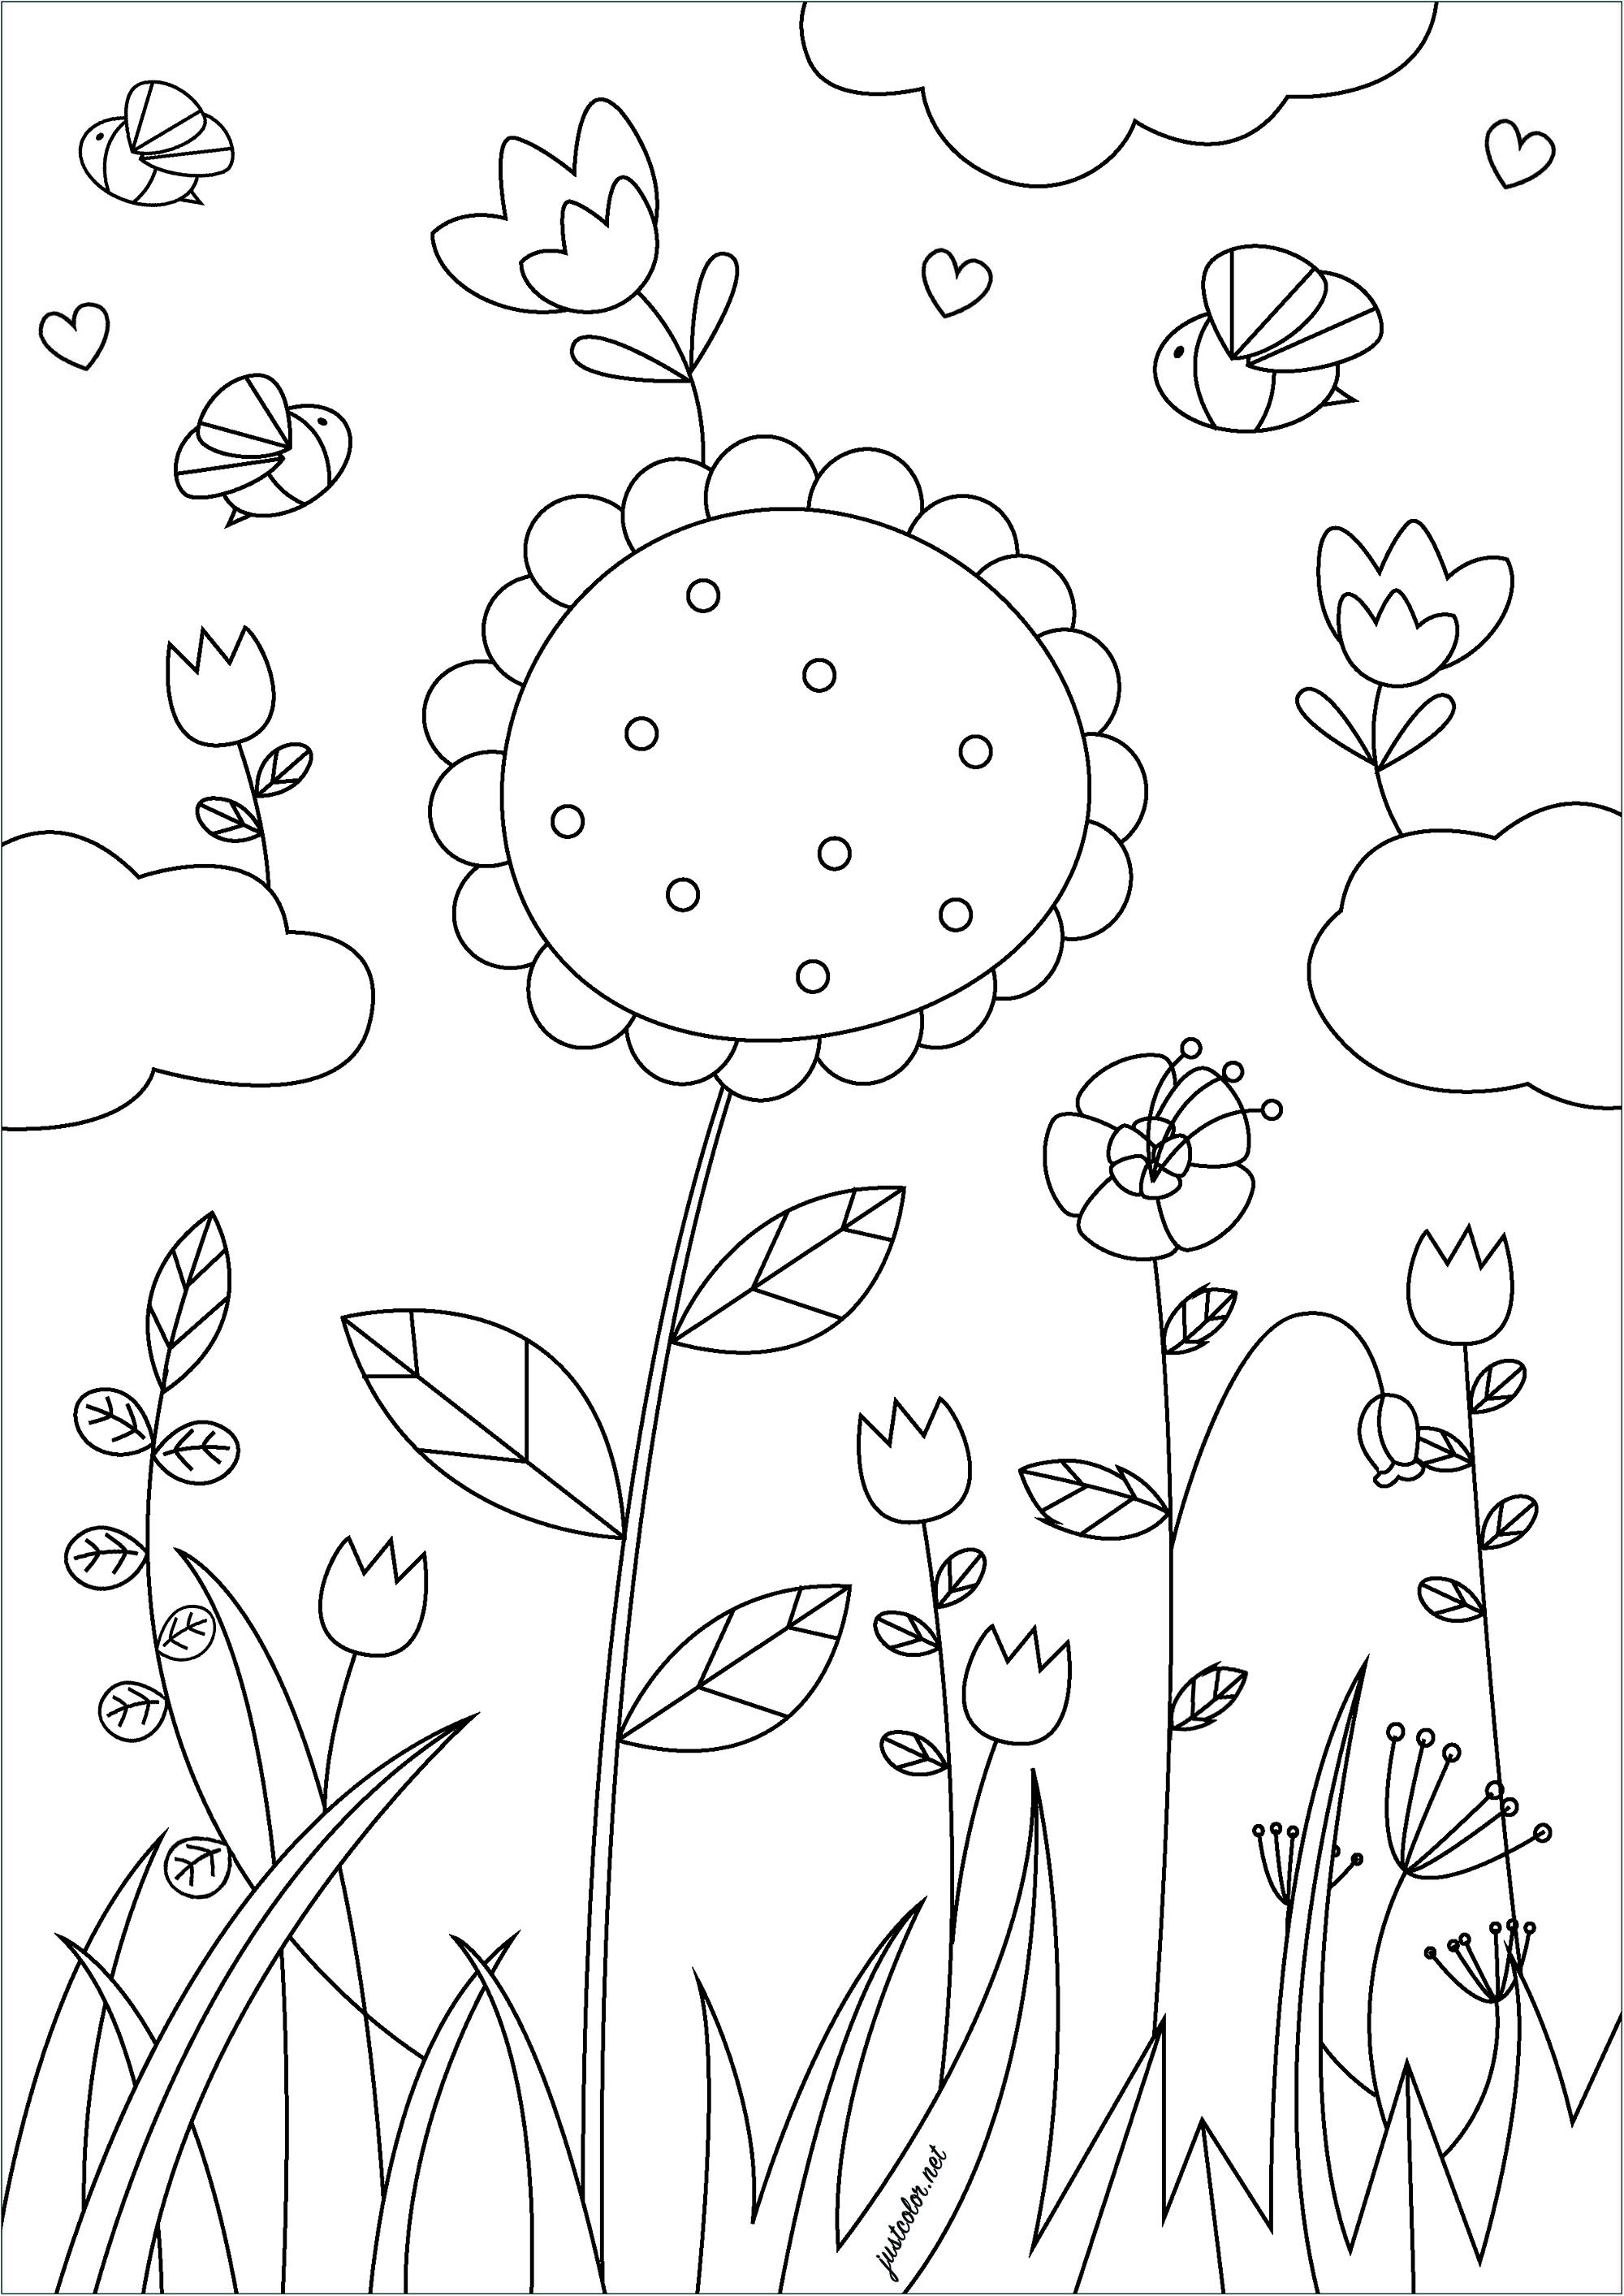 Bonitas flores al viento. Esta página para colorear llamada 'Flores de primavera' muestra varias flores floreciendo en un campo de vegetación, Artista : Gaelle Picard